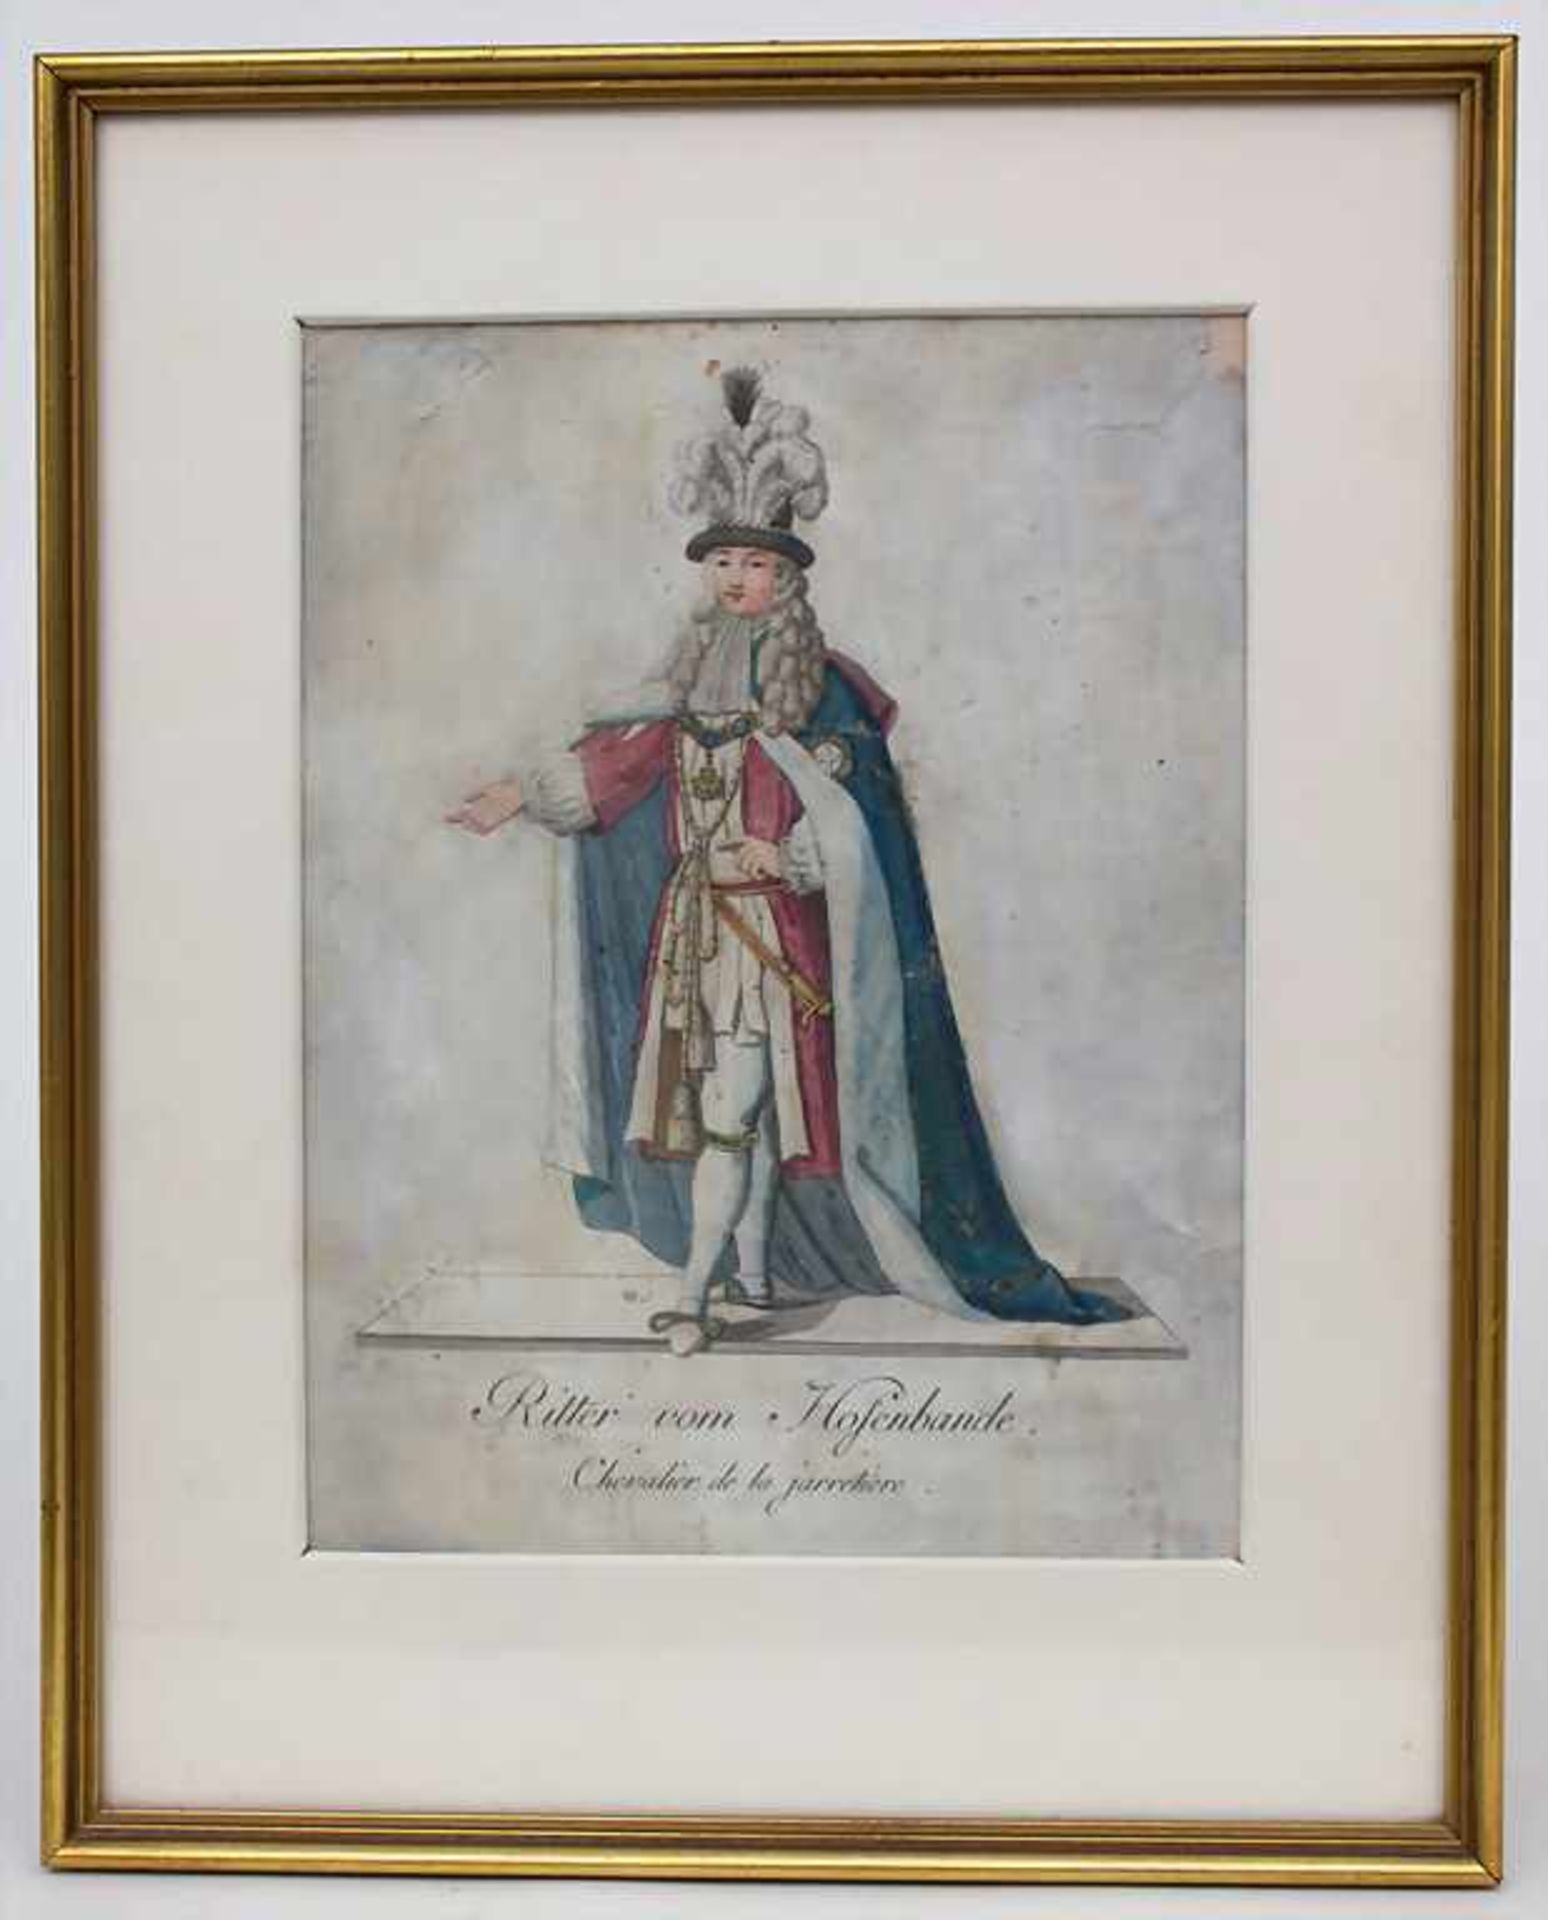 Künstler des 18. Jh. / An 18th century artist, 'Ritter vom Hosenbande'Technik: Kupferstich, - Image 2 of 4